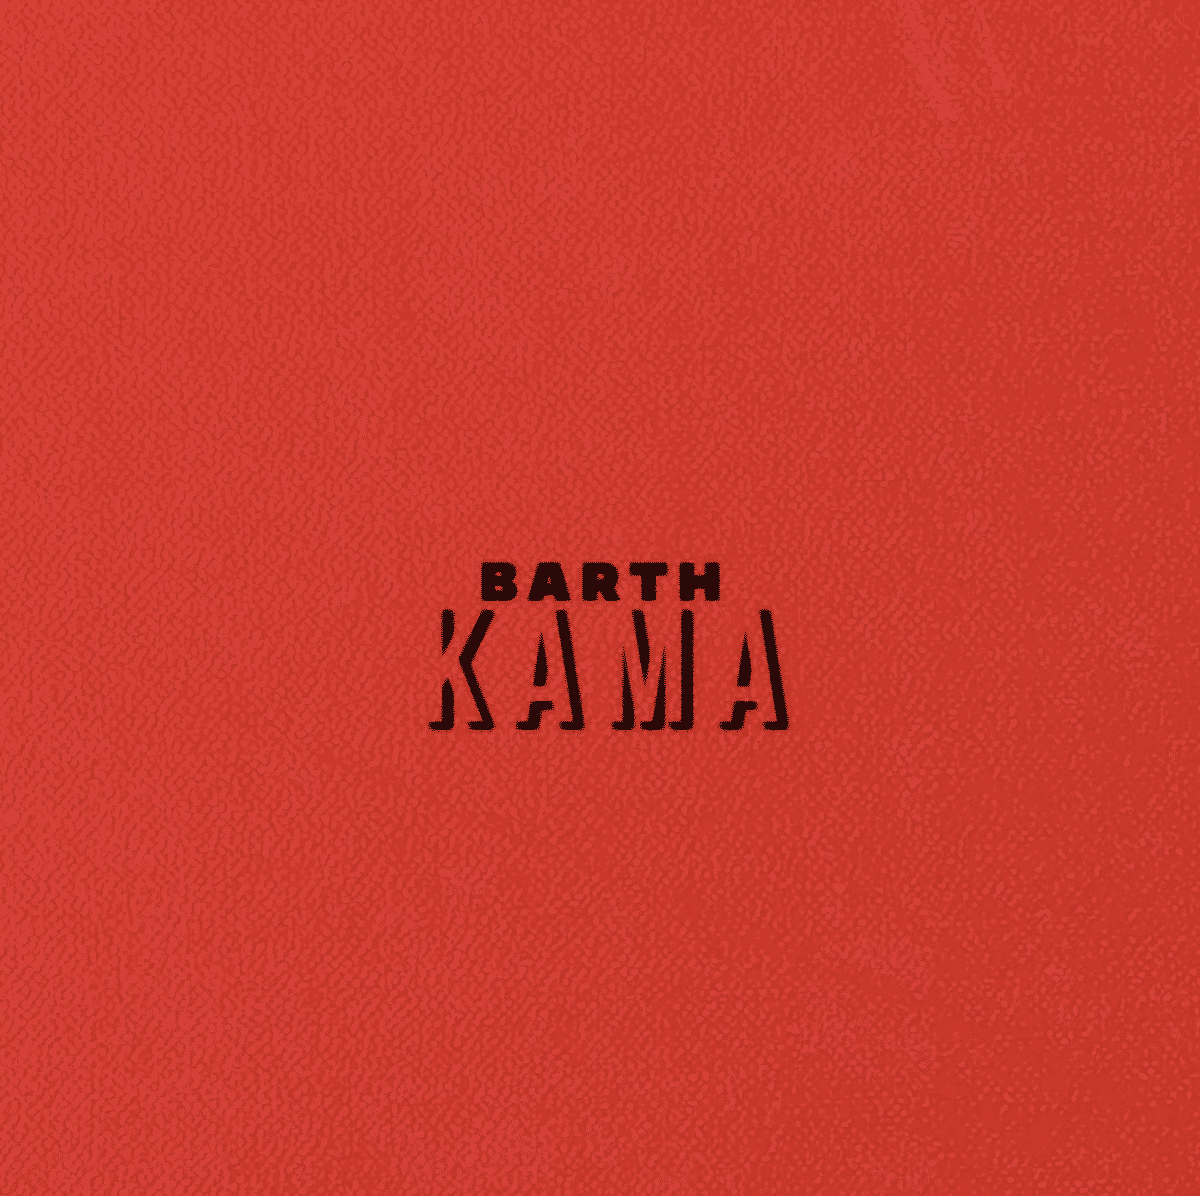 Barth dévoile son nouveau single afro-pop 'Kama"